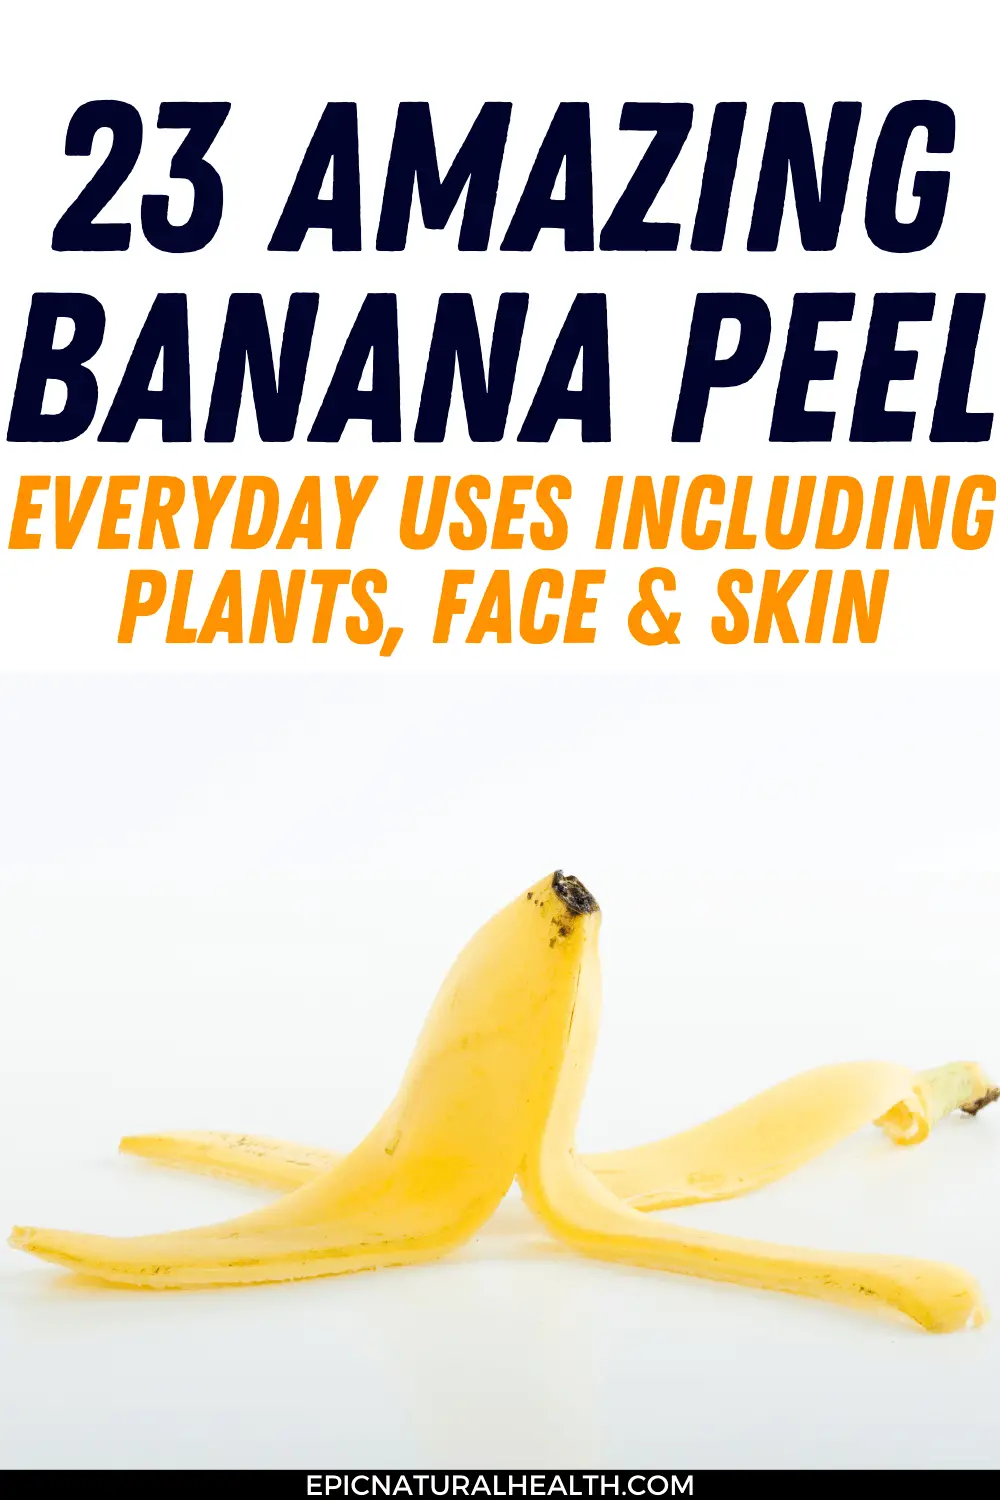 Banana Peel everyday uses